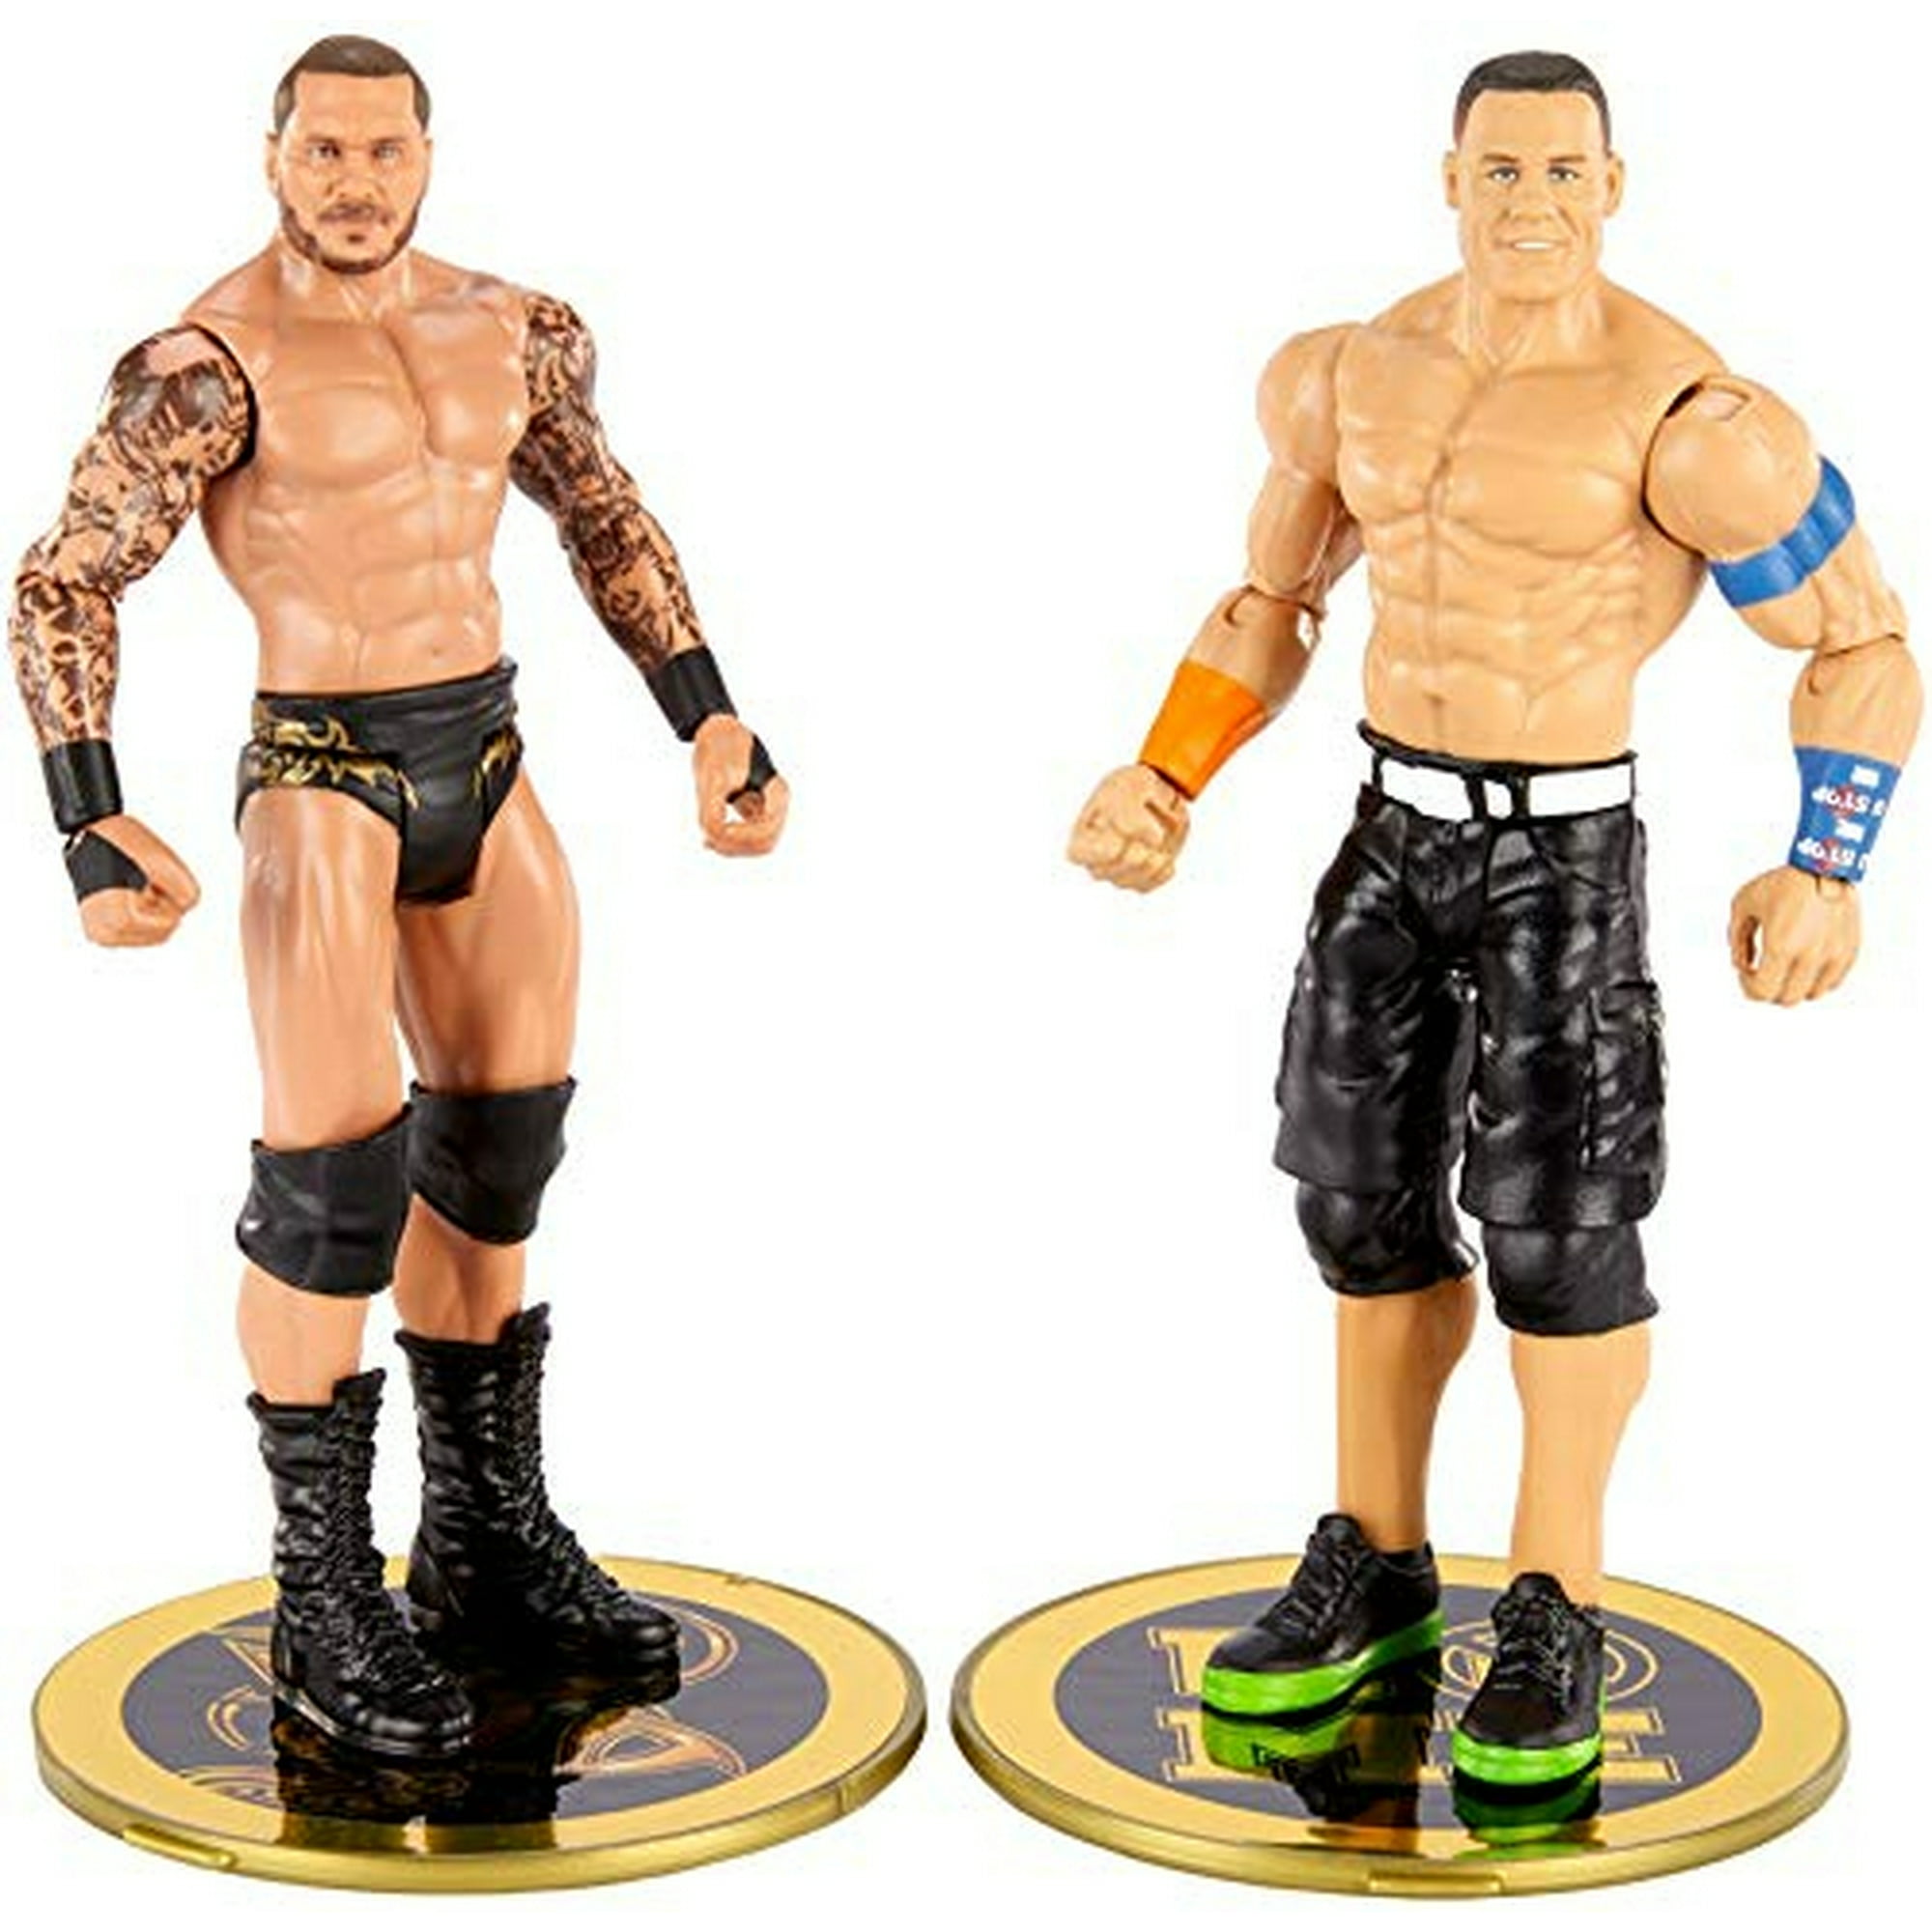 Mattel Figuras de acción de la WWE, figura de John Cena Elite de la WWE con  accesorios, coleccionable